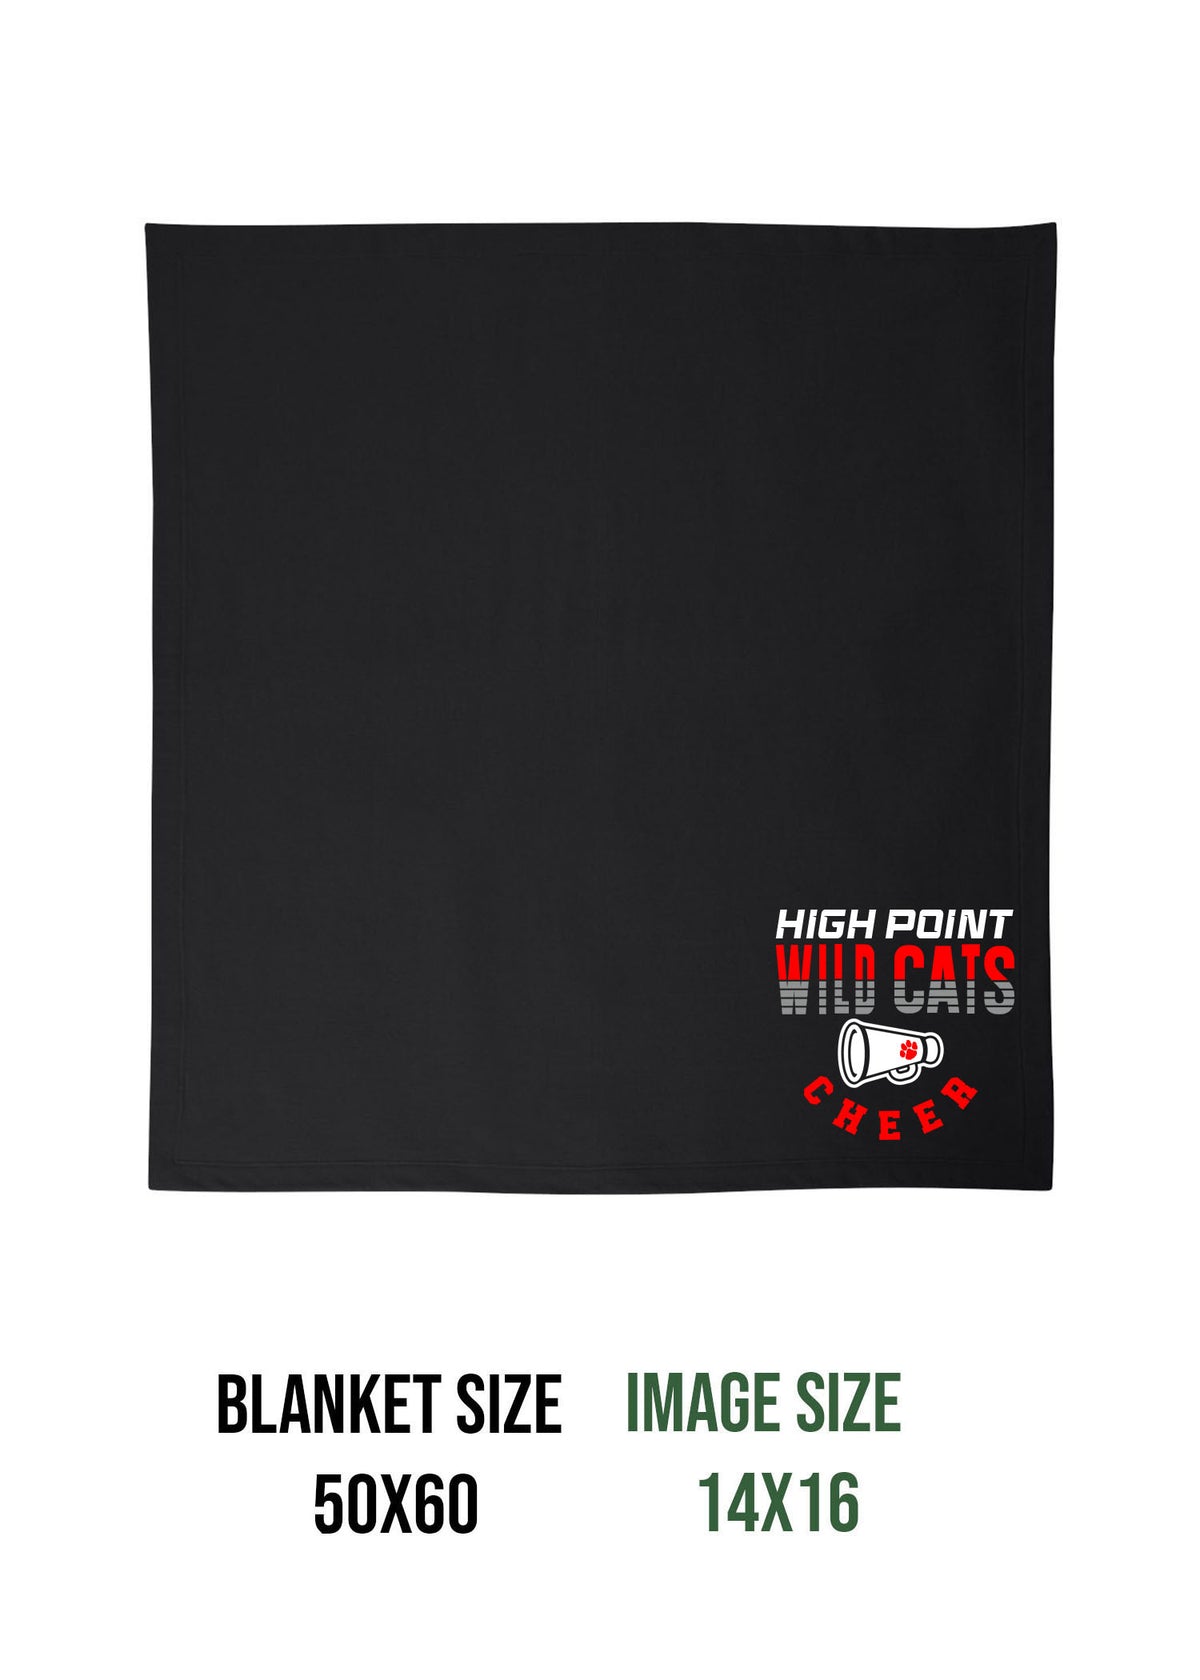 Wildcats Cheer Design 2 Blanket